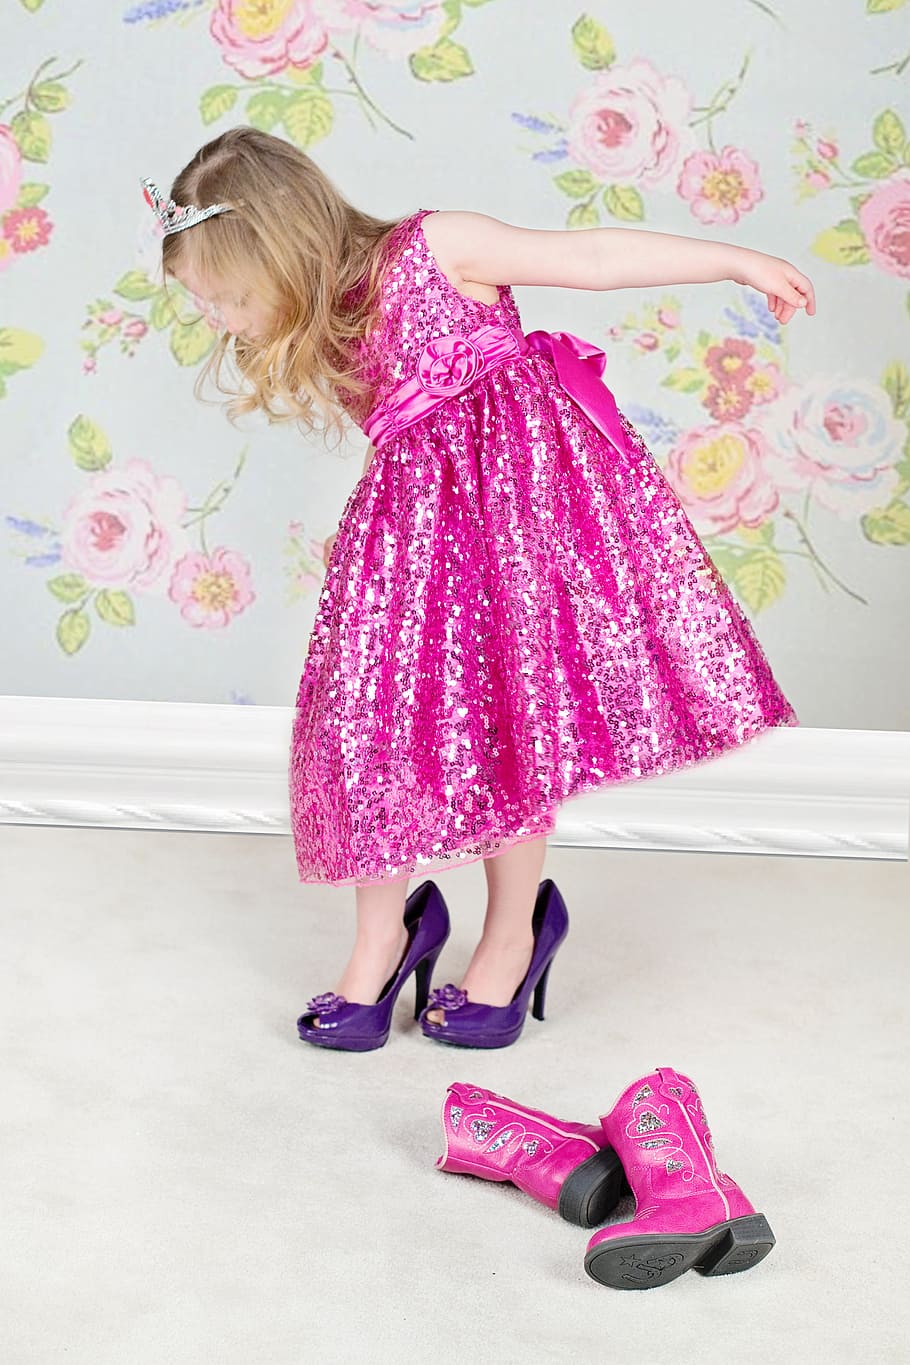 girl fitting a pair of heels, little girl, high heels, pink, dress